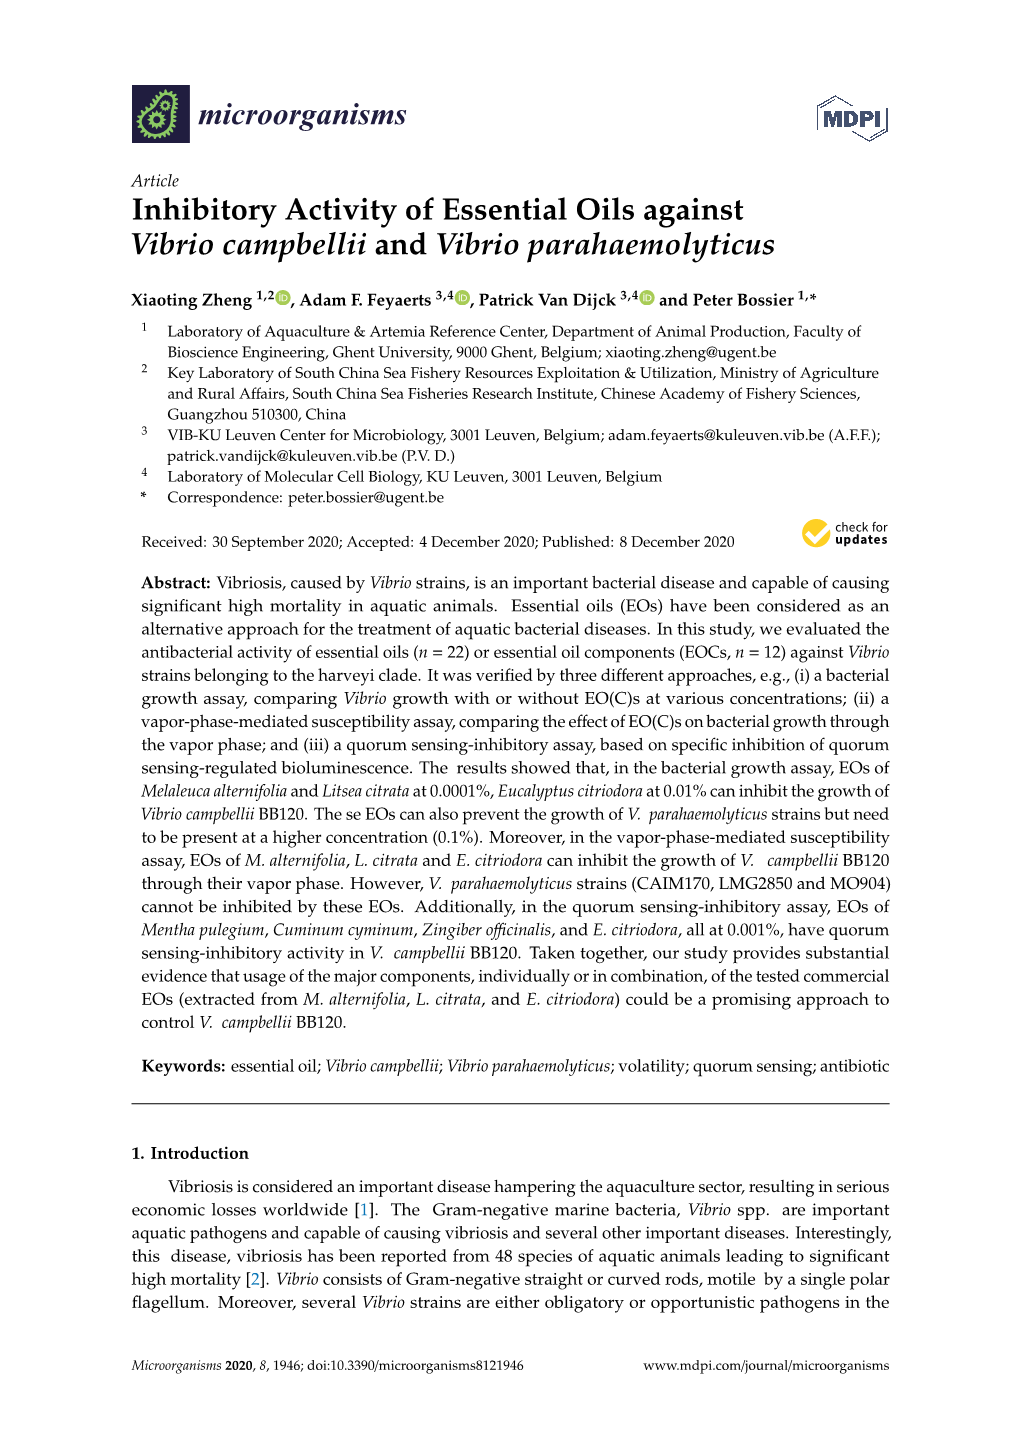 Inhibitory Activity of Essential Oils Against Vibrio Campbellii and Vibrio Parahaemolyticus